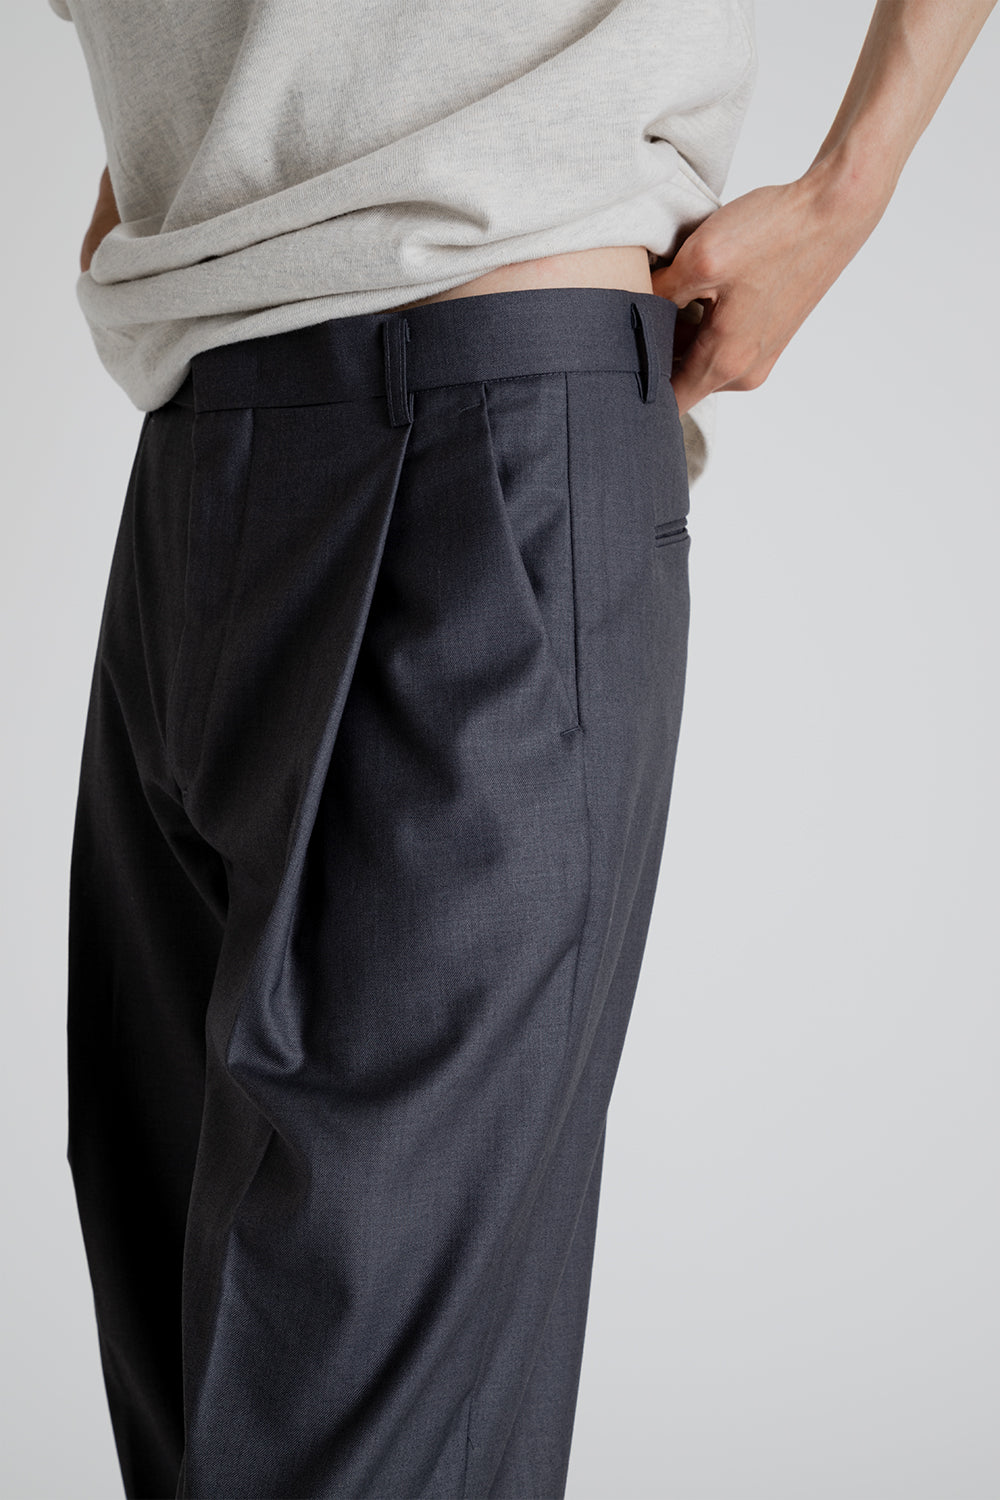 OG One Tuck Wide Slack Pants - Charcoal